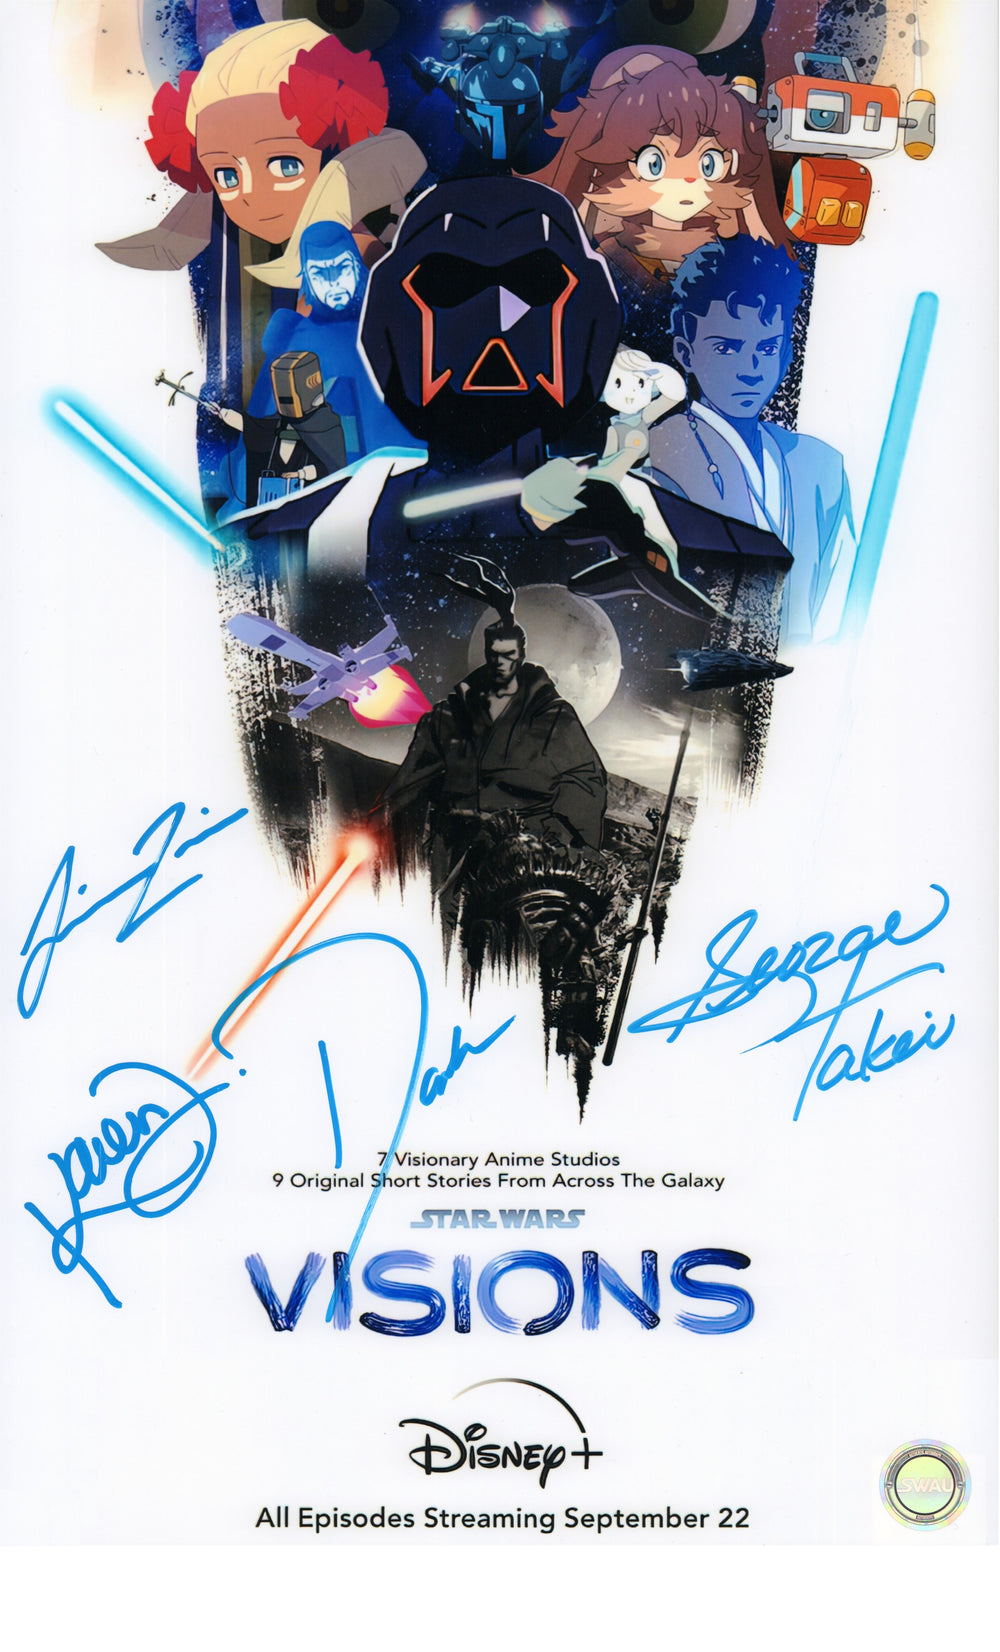 Star Wars: Visions 11x17 Mini Poster Signed by Simu Liu, David Harbour, George Takei, & Karen Fukuhara